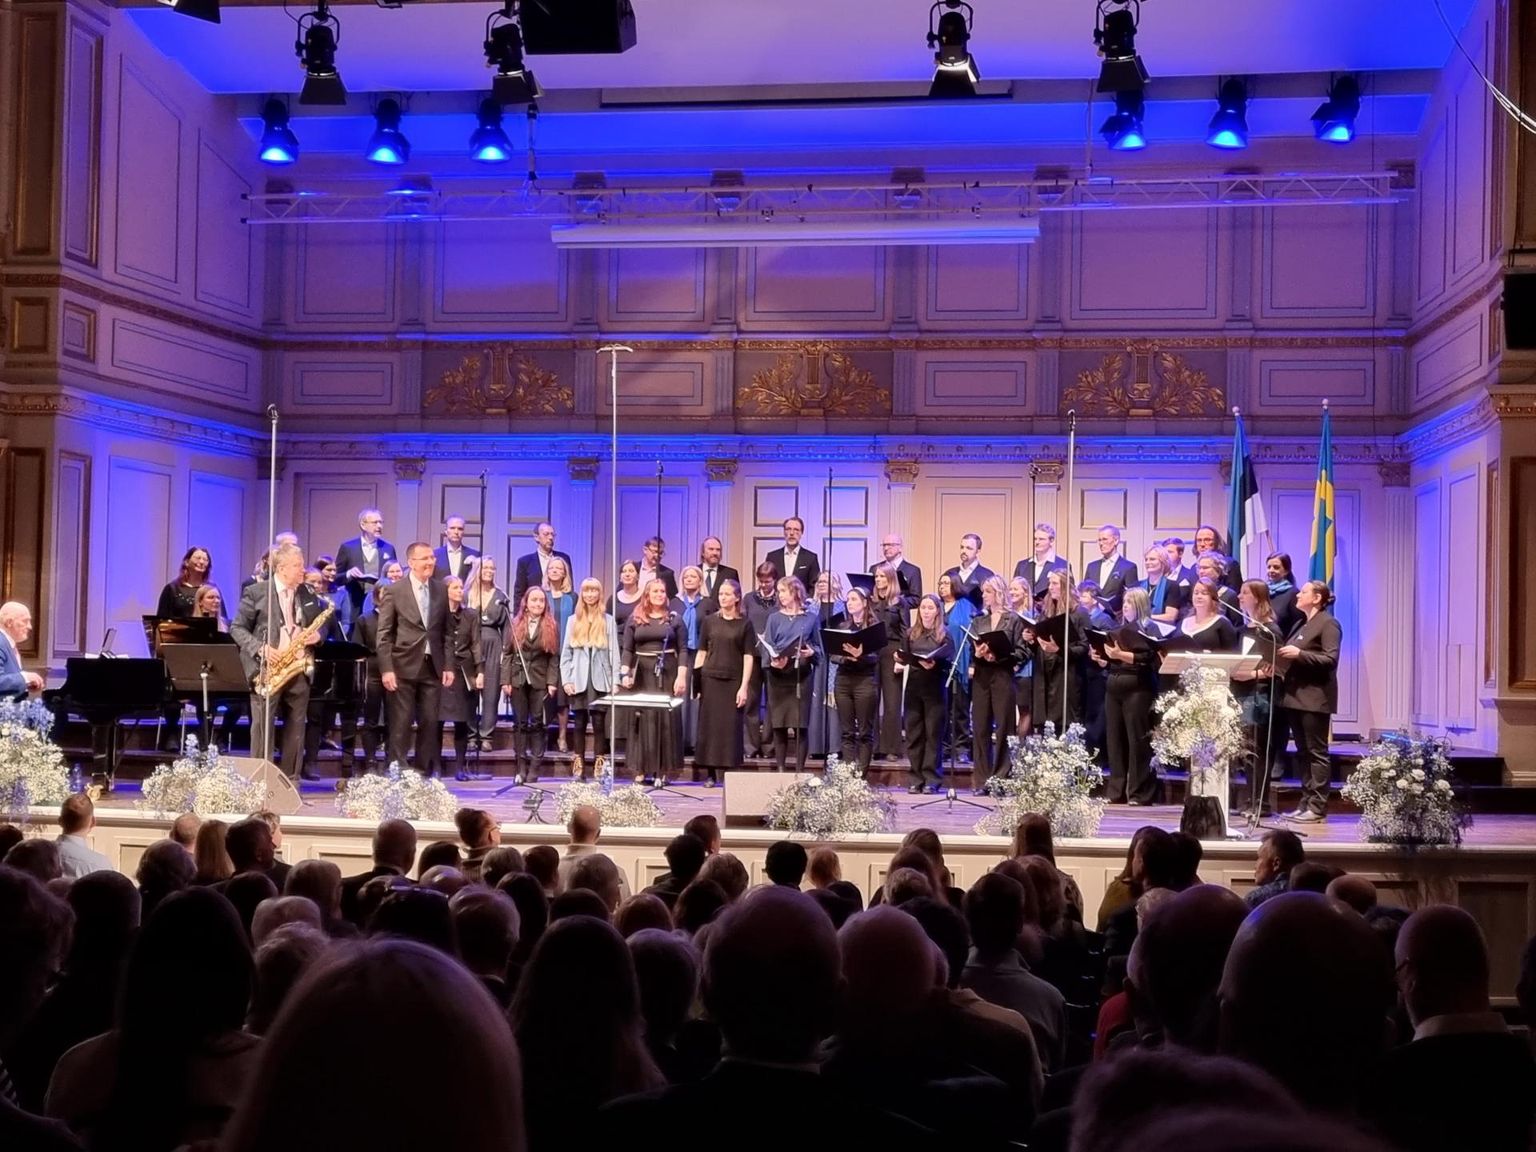 Rootsi Eestlaste Liidu poolt korraldatud Eesti Vabariigi 104. aastapäeva kontsertaktus Stockholmi Musikaliska kontserdisaalis.